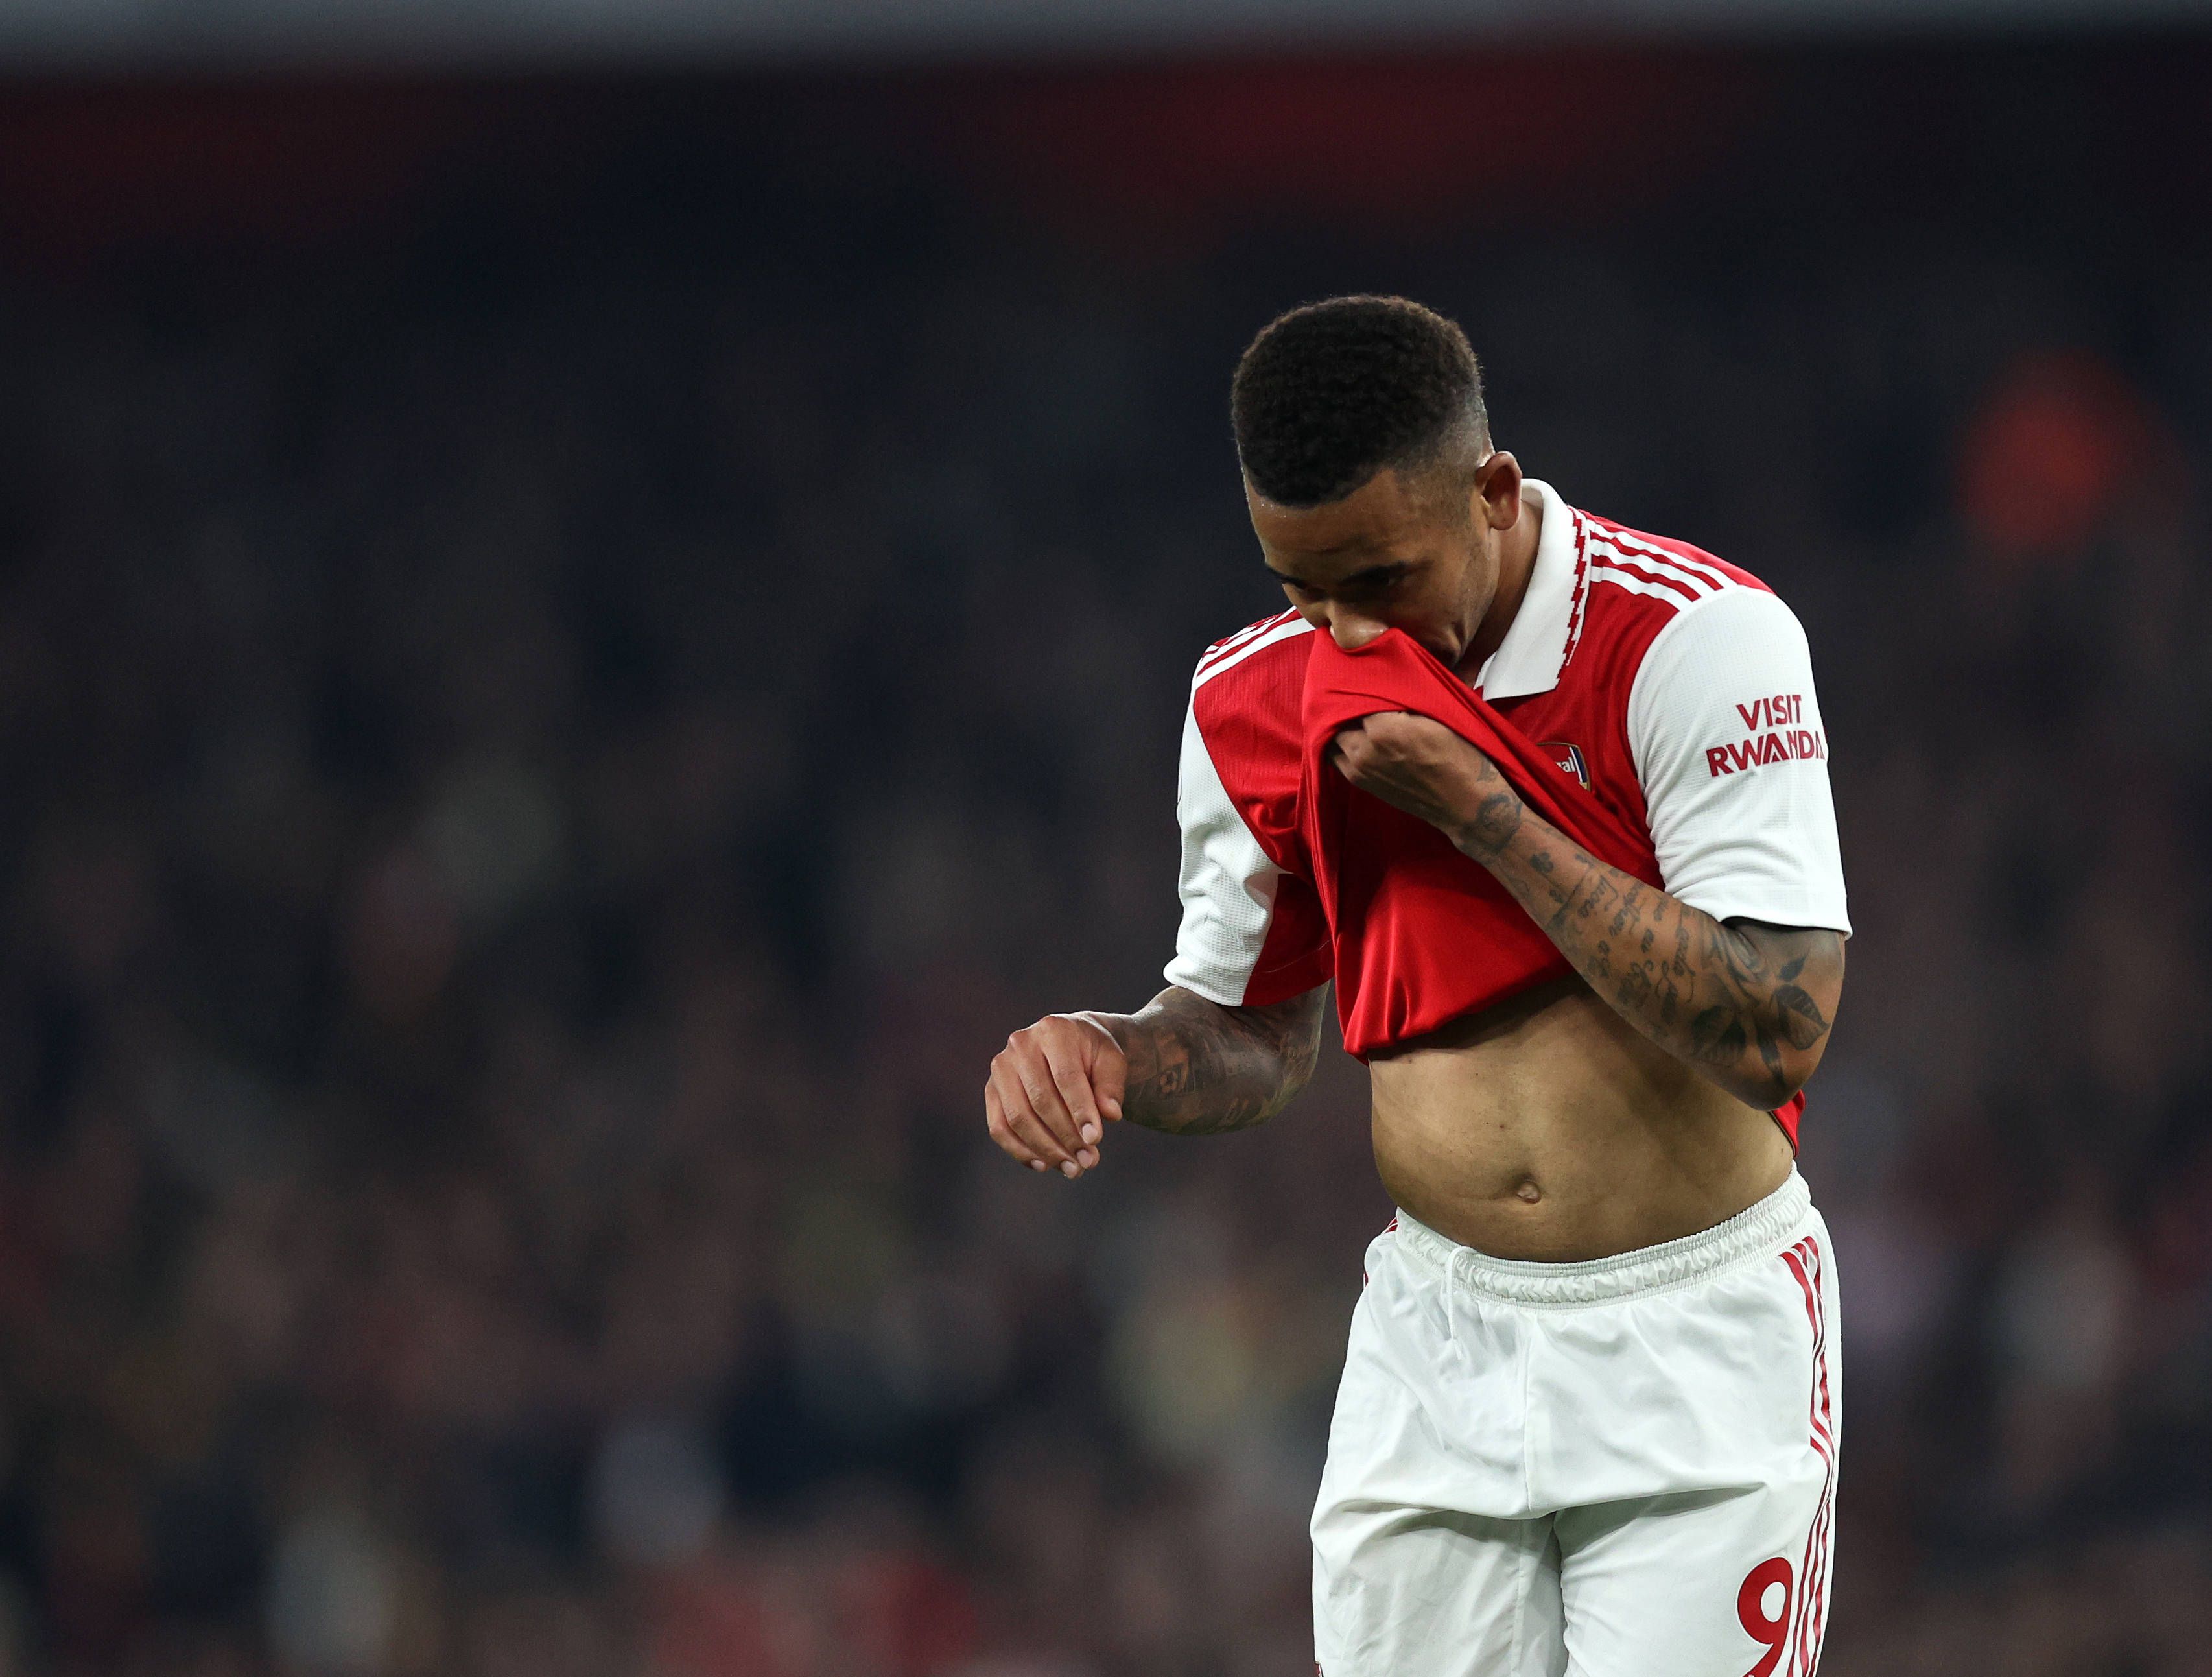 Arsenal's Gabriel Jesus to miss start of season with Injury